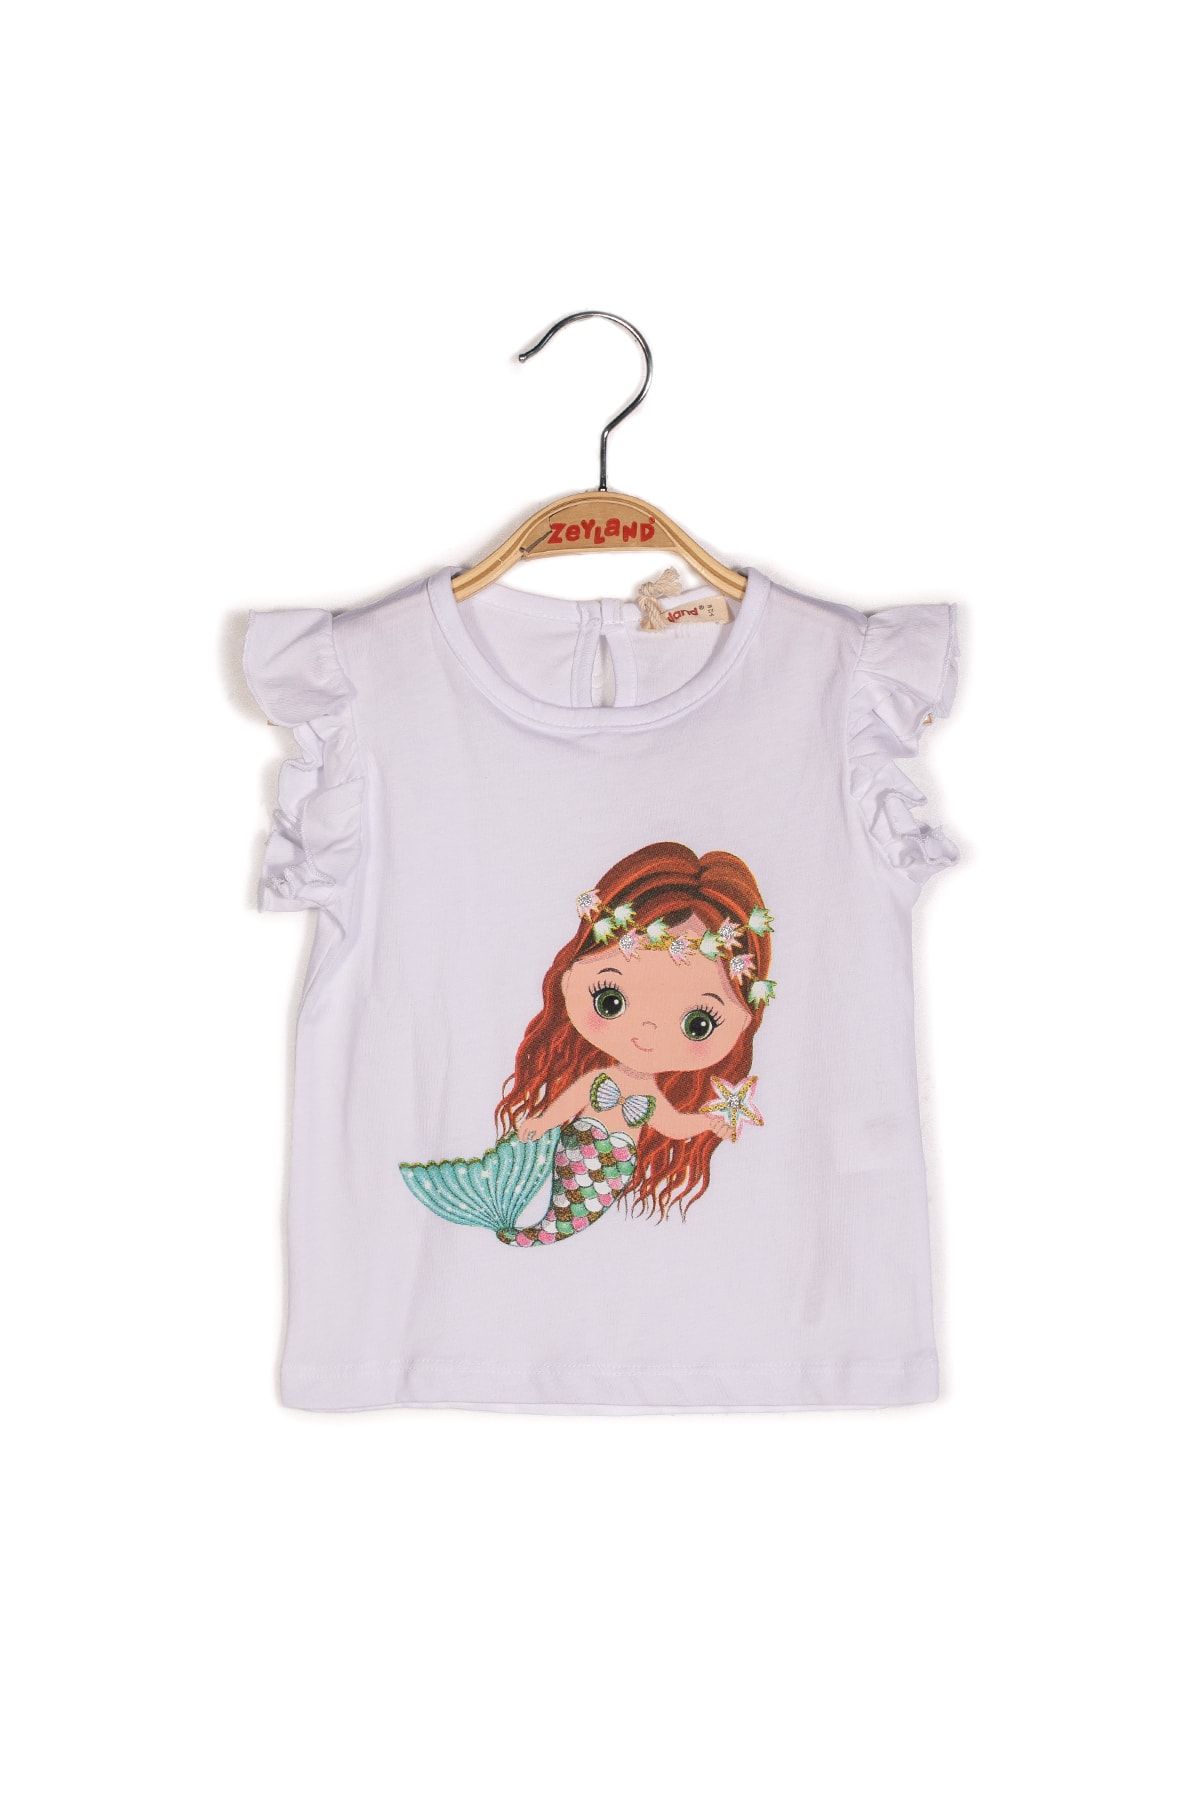 Zeyland Kız Bebek Deniz Kızı Baskılı Beyaz Kolları Fırfırlı T-shirt